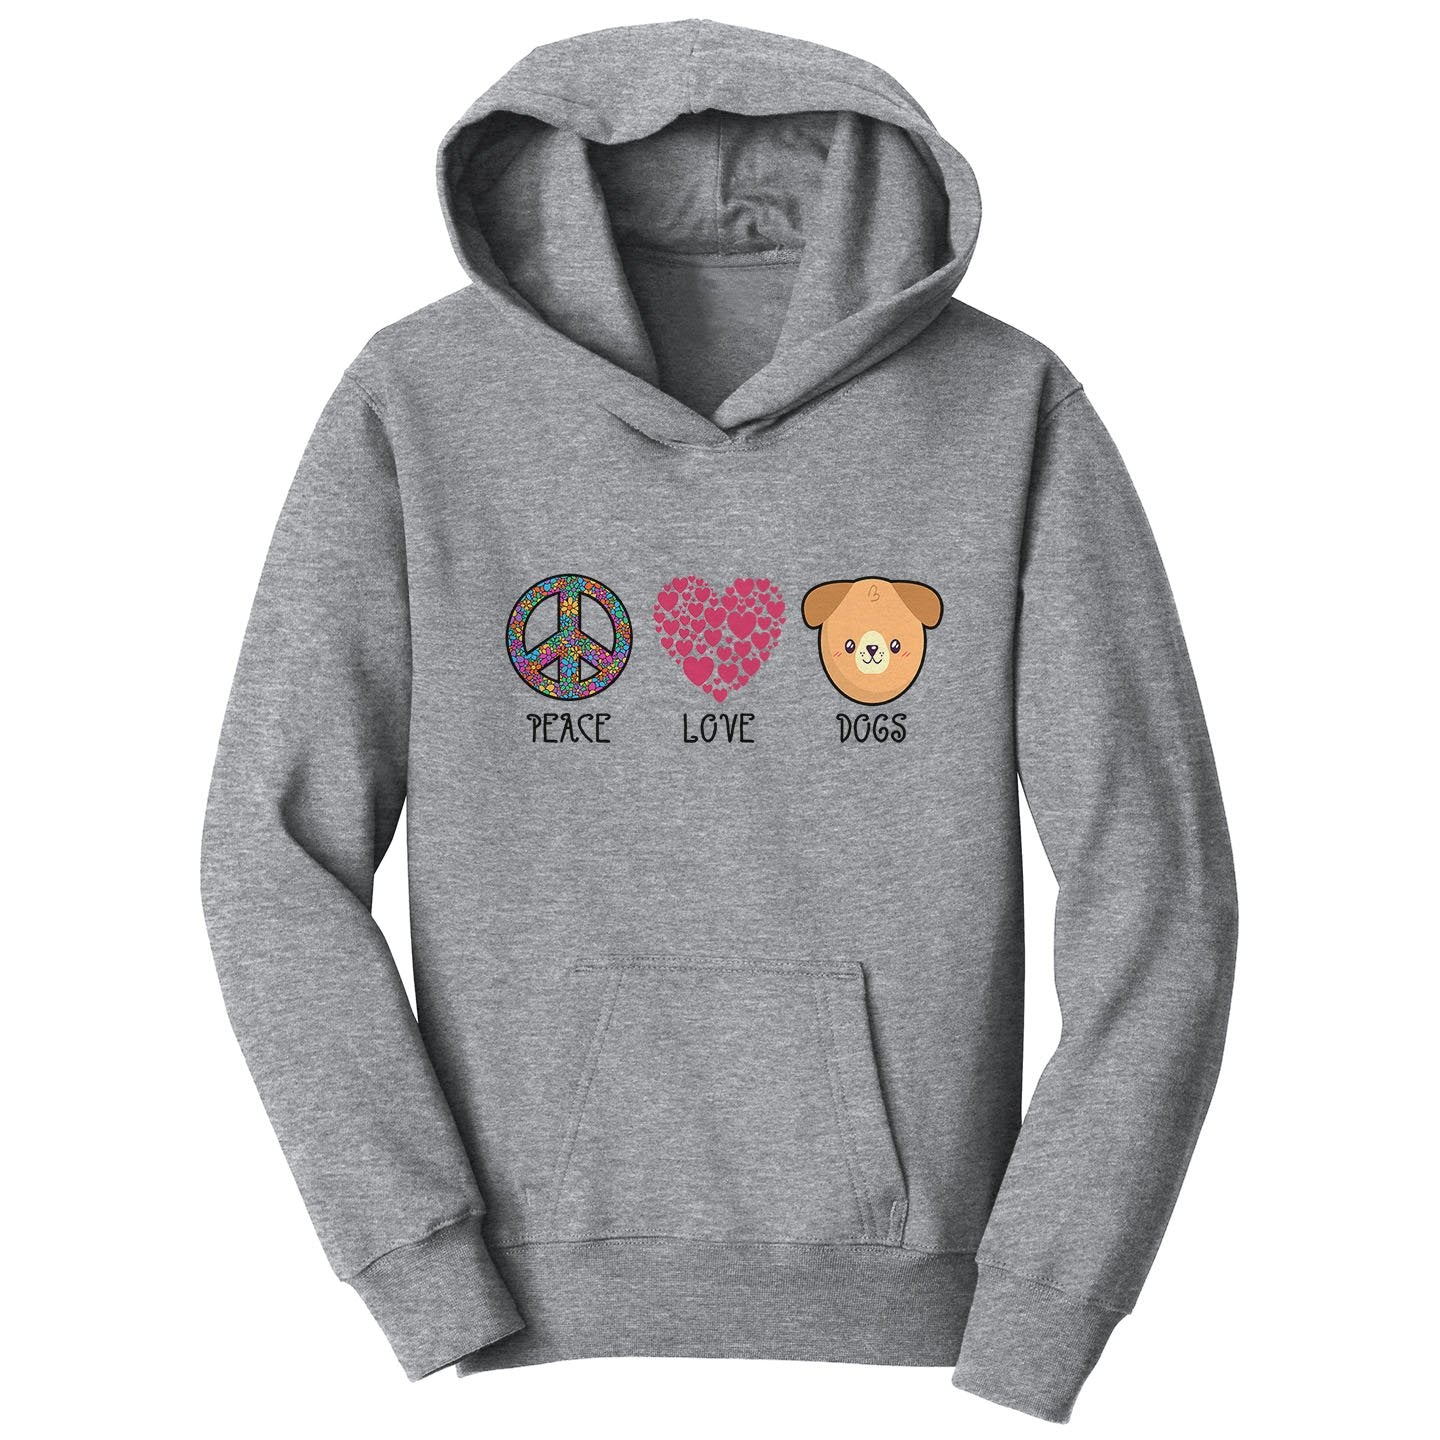 Peace Love Dogs - Kids' Unisex Hoodie Sweatshirt